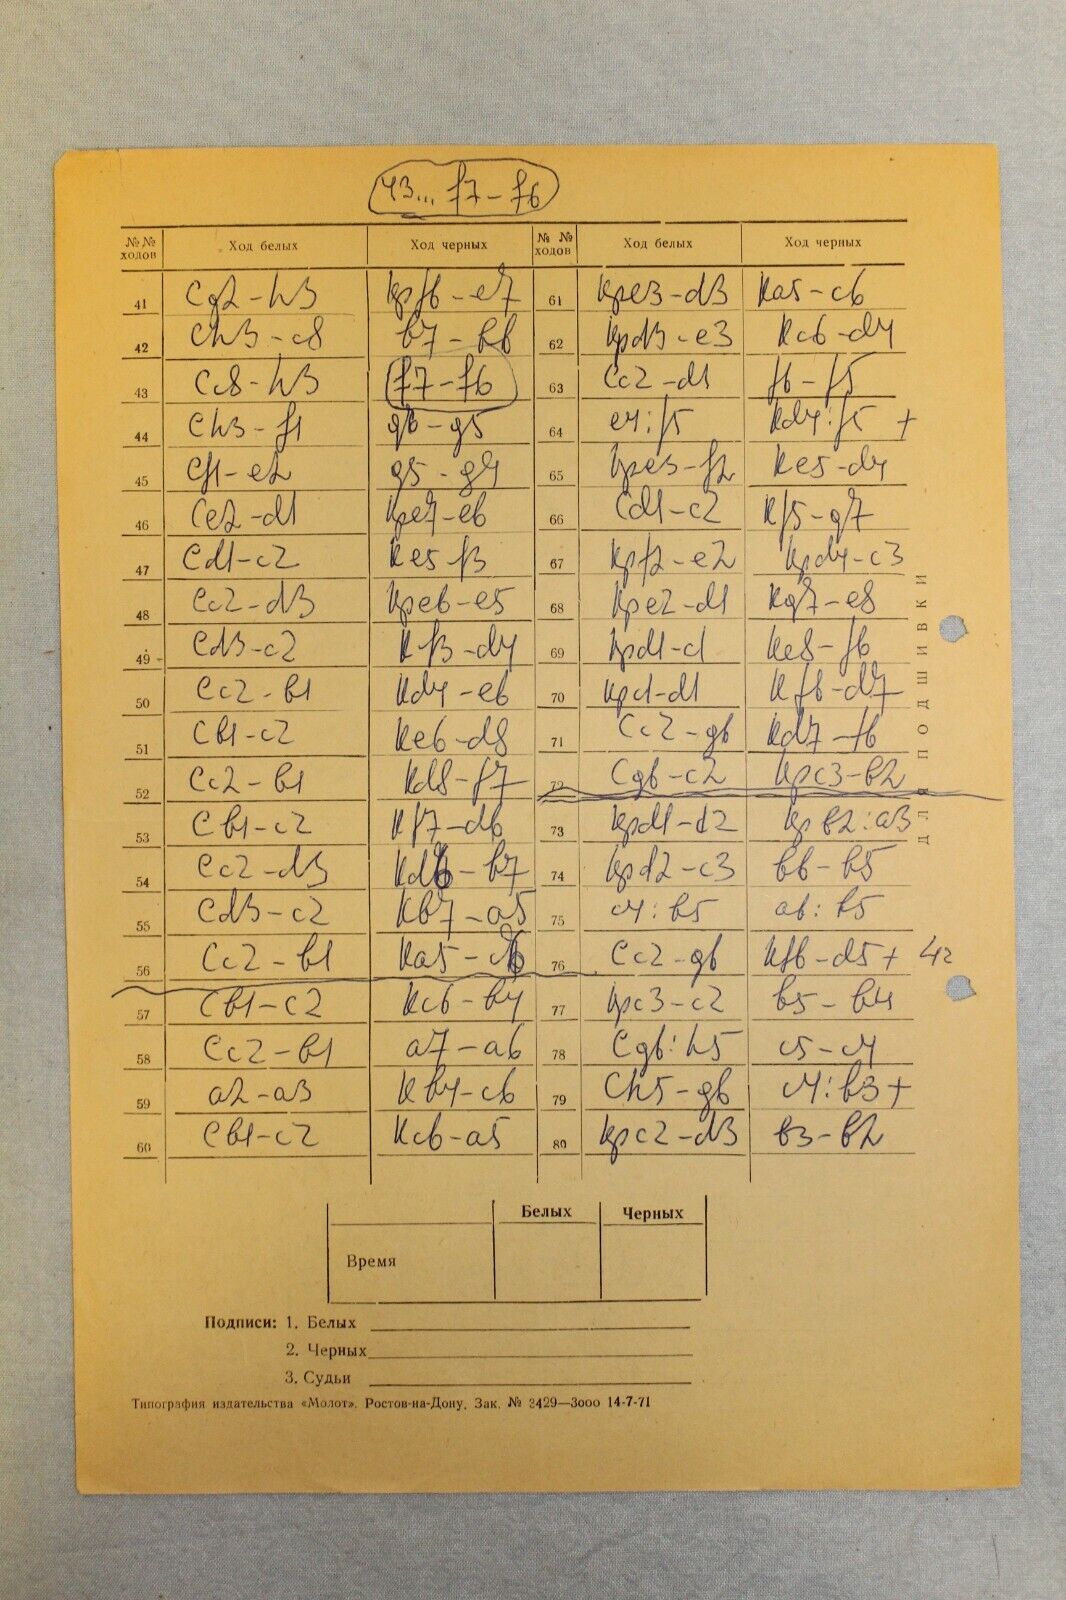 11808.Soviet Chess Scoresheet: Holmov-Vasyukov. 1971